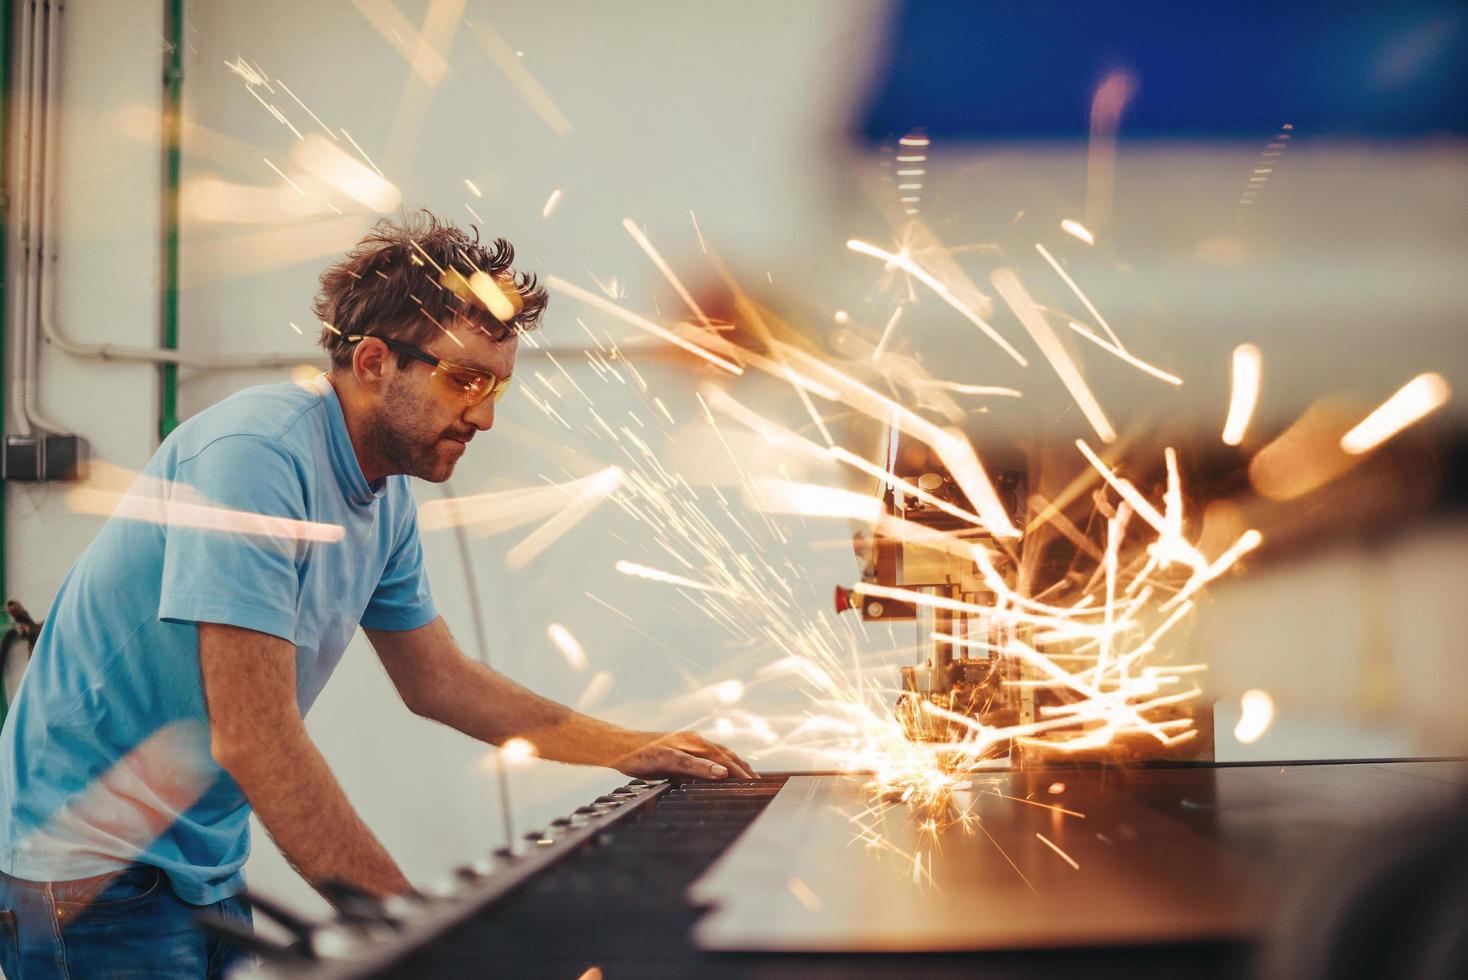 innerhalb der Schwerindustrie. Ein Mann arbeitet in einer modernen Fabrik an einer CNC-Maschine. selektiver Fokus foto